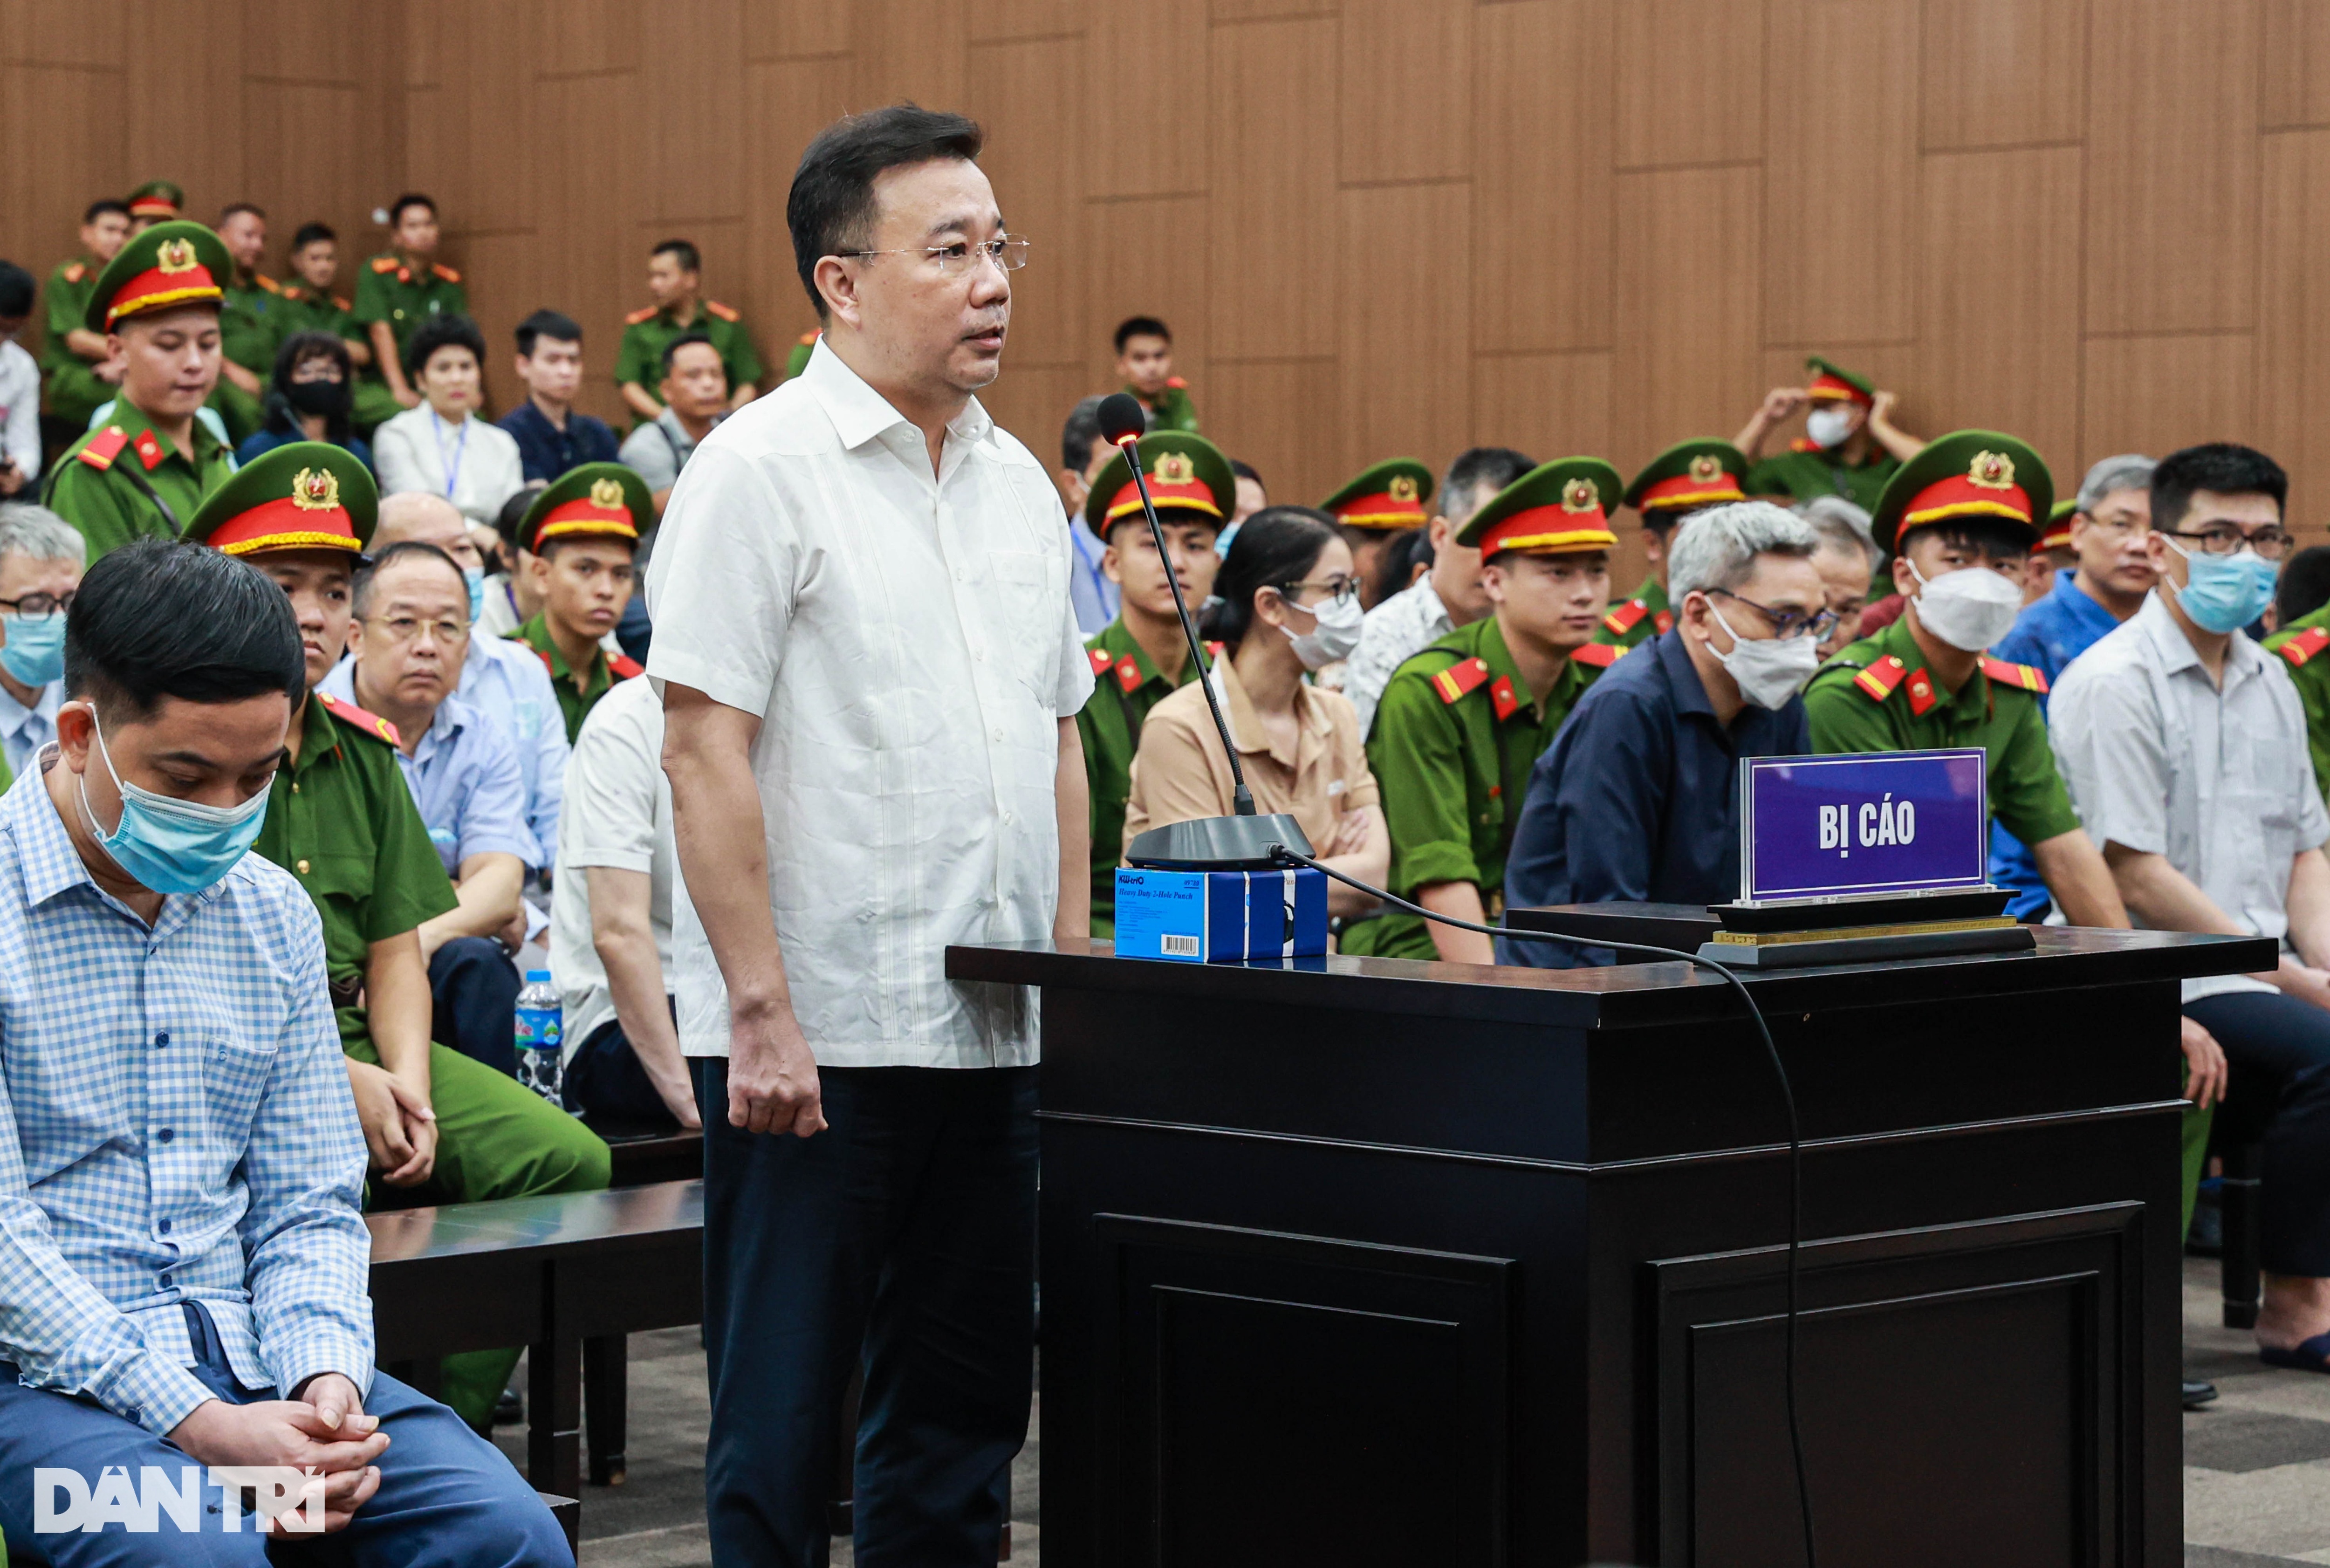 71 cán bộ, giáo viên ở Hà Nội xin giảm án cho ông Chử Xuân Dũng - 1